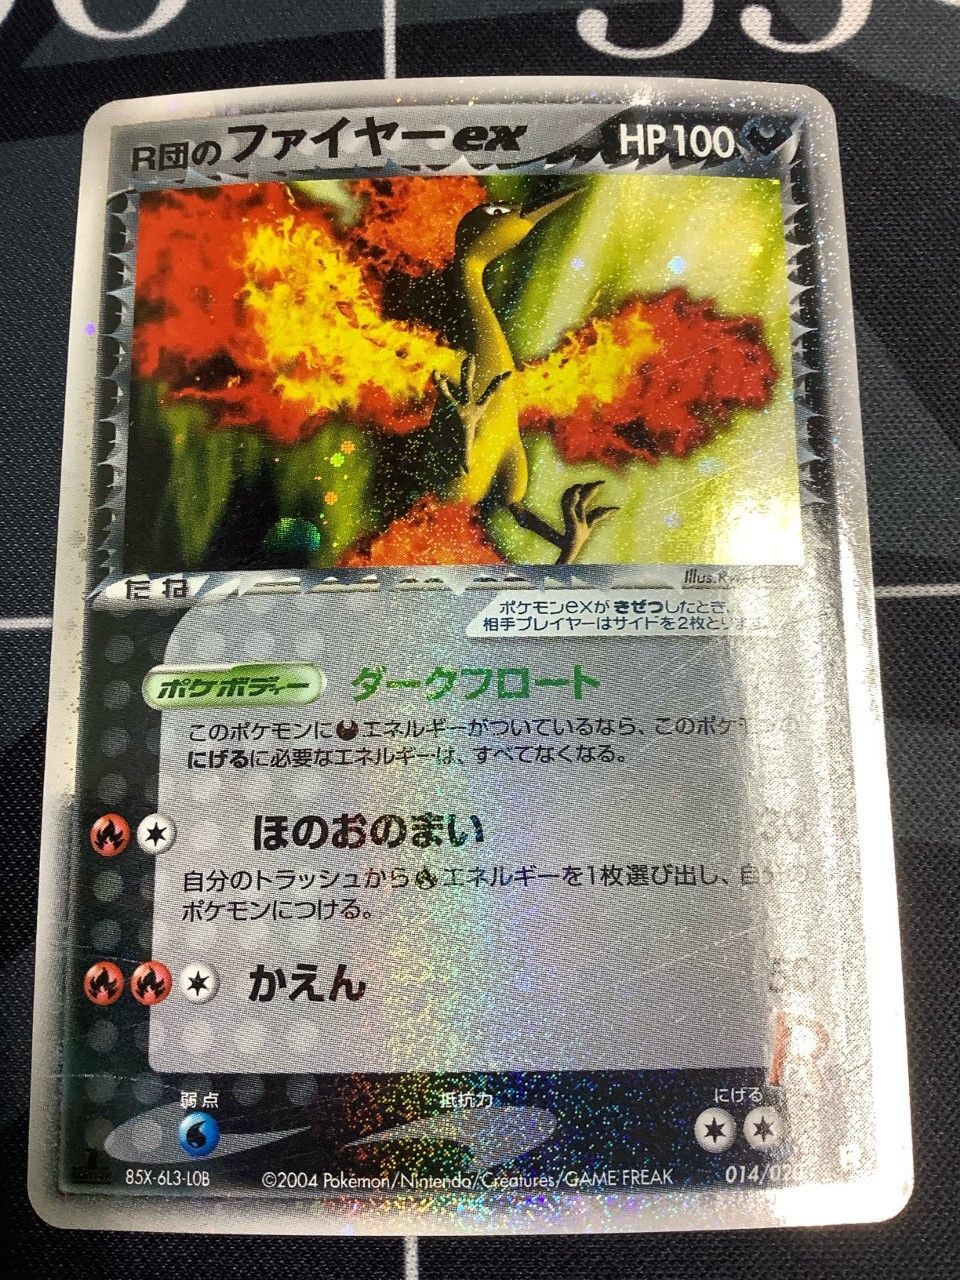 R団のファイヤーex【ポケモンカードゲーム PCG】【Pokemon Card】